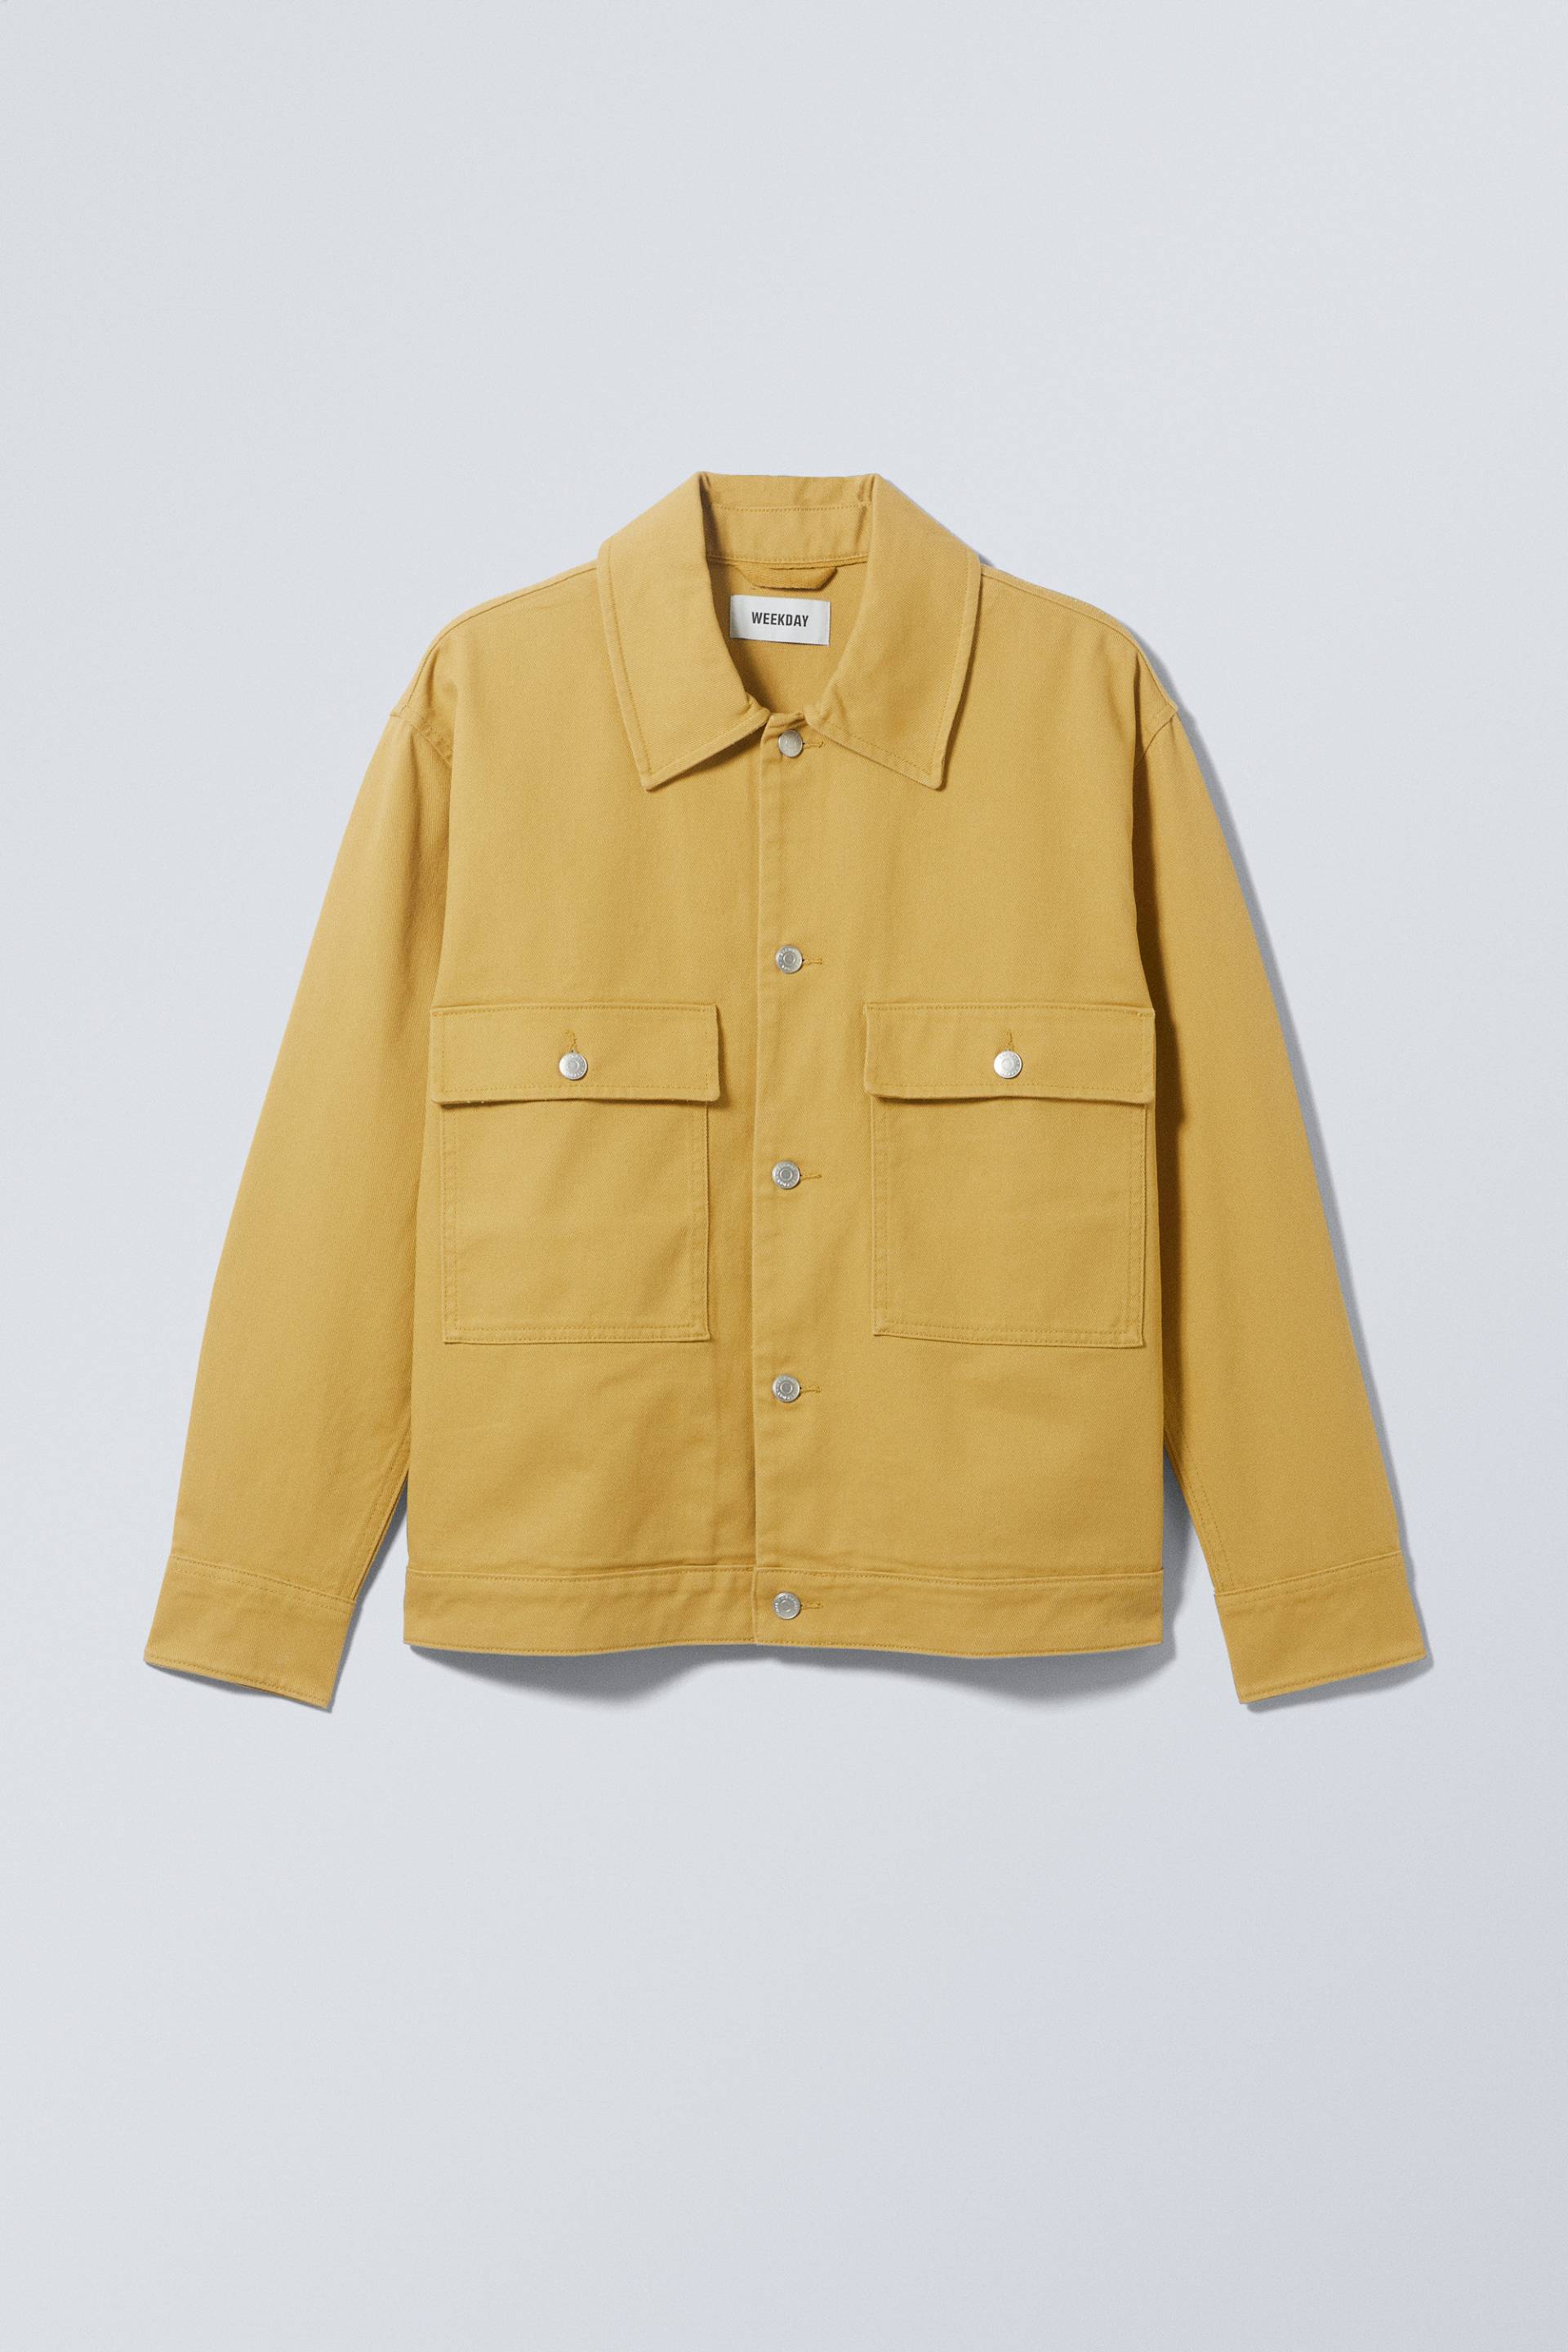 Weekday Brian Workwear-Jacke Gelb, Jacken in Größe XS. Farbe: Yellow von Weekday